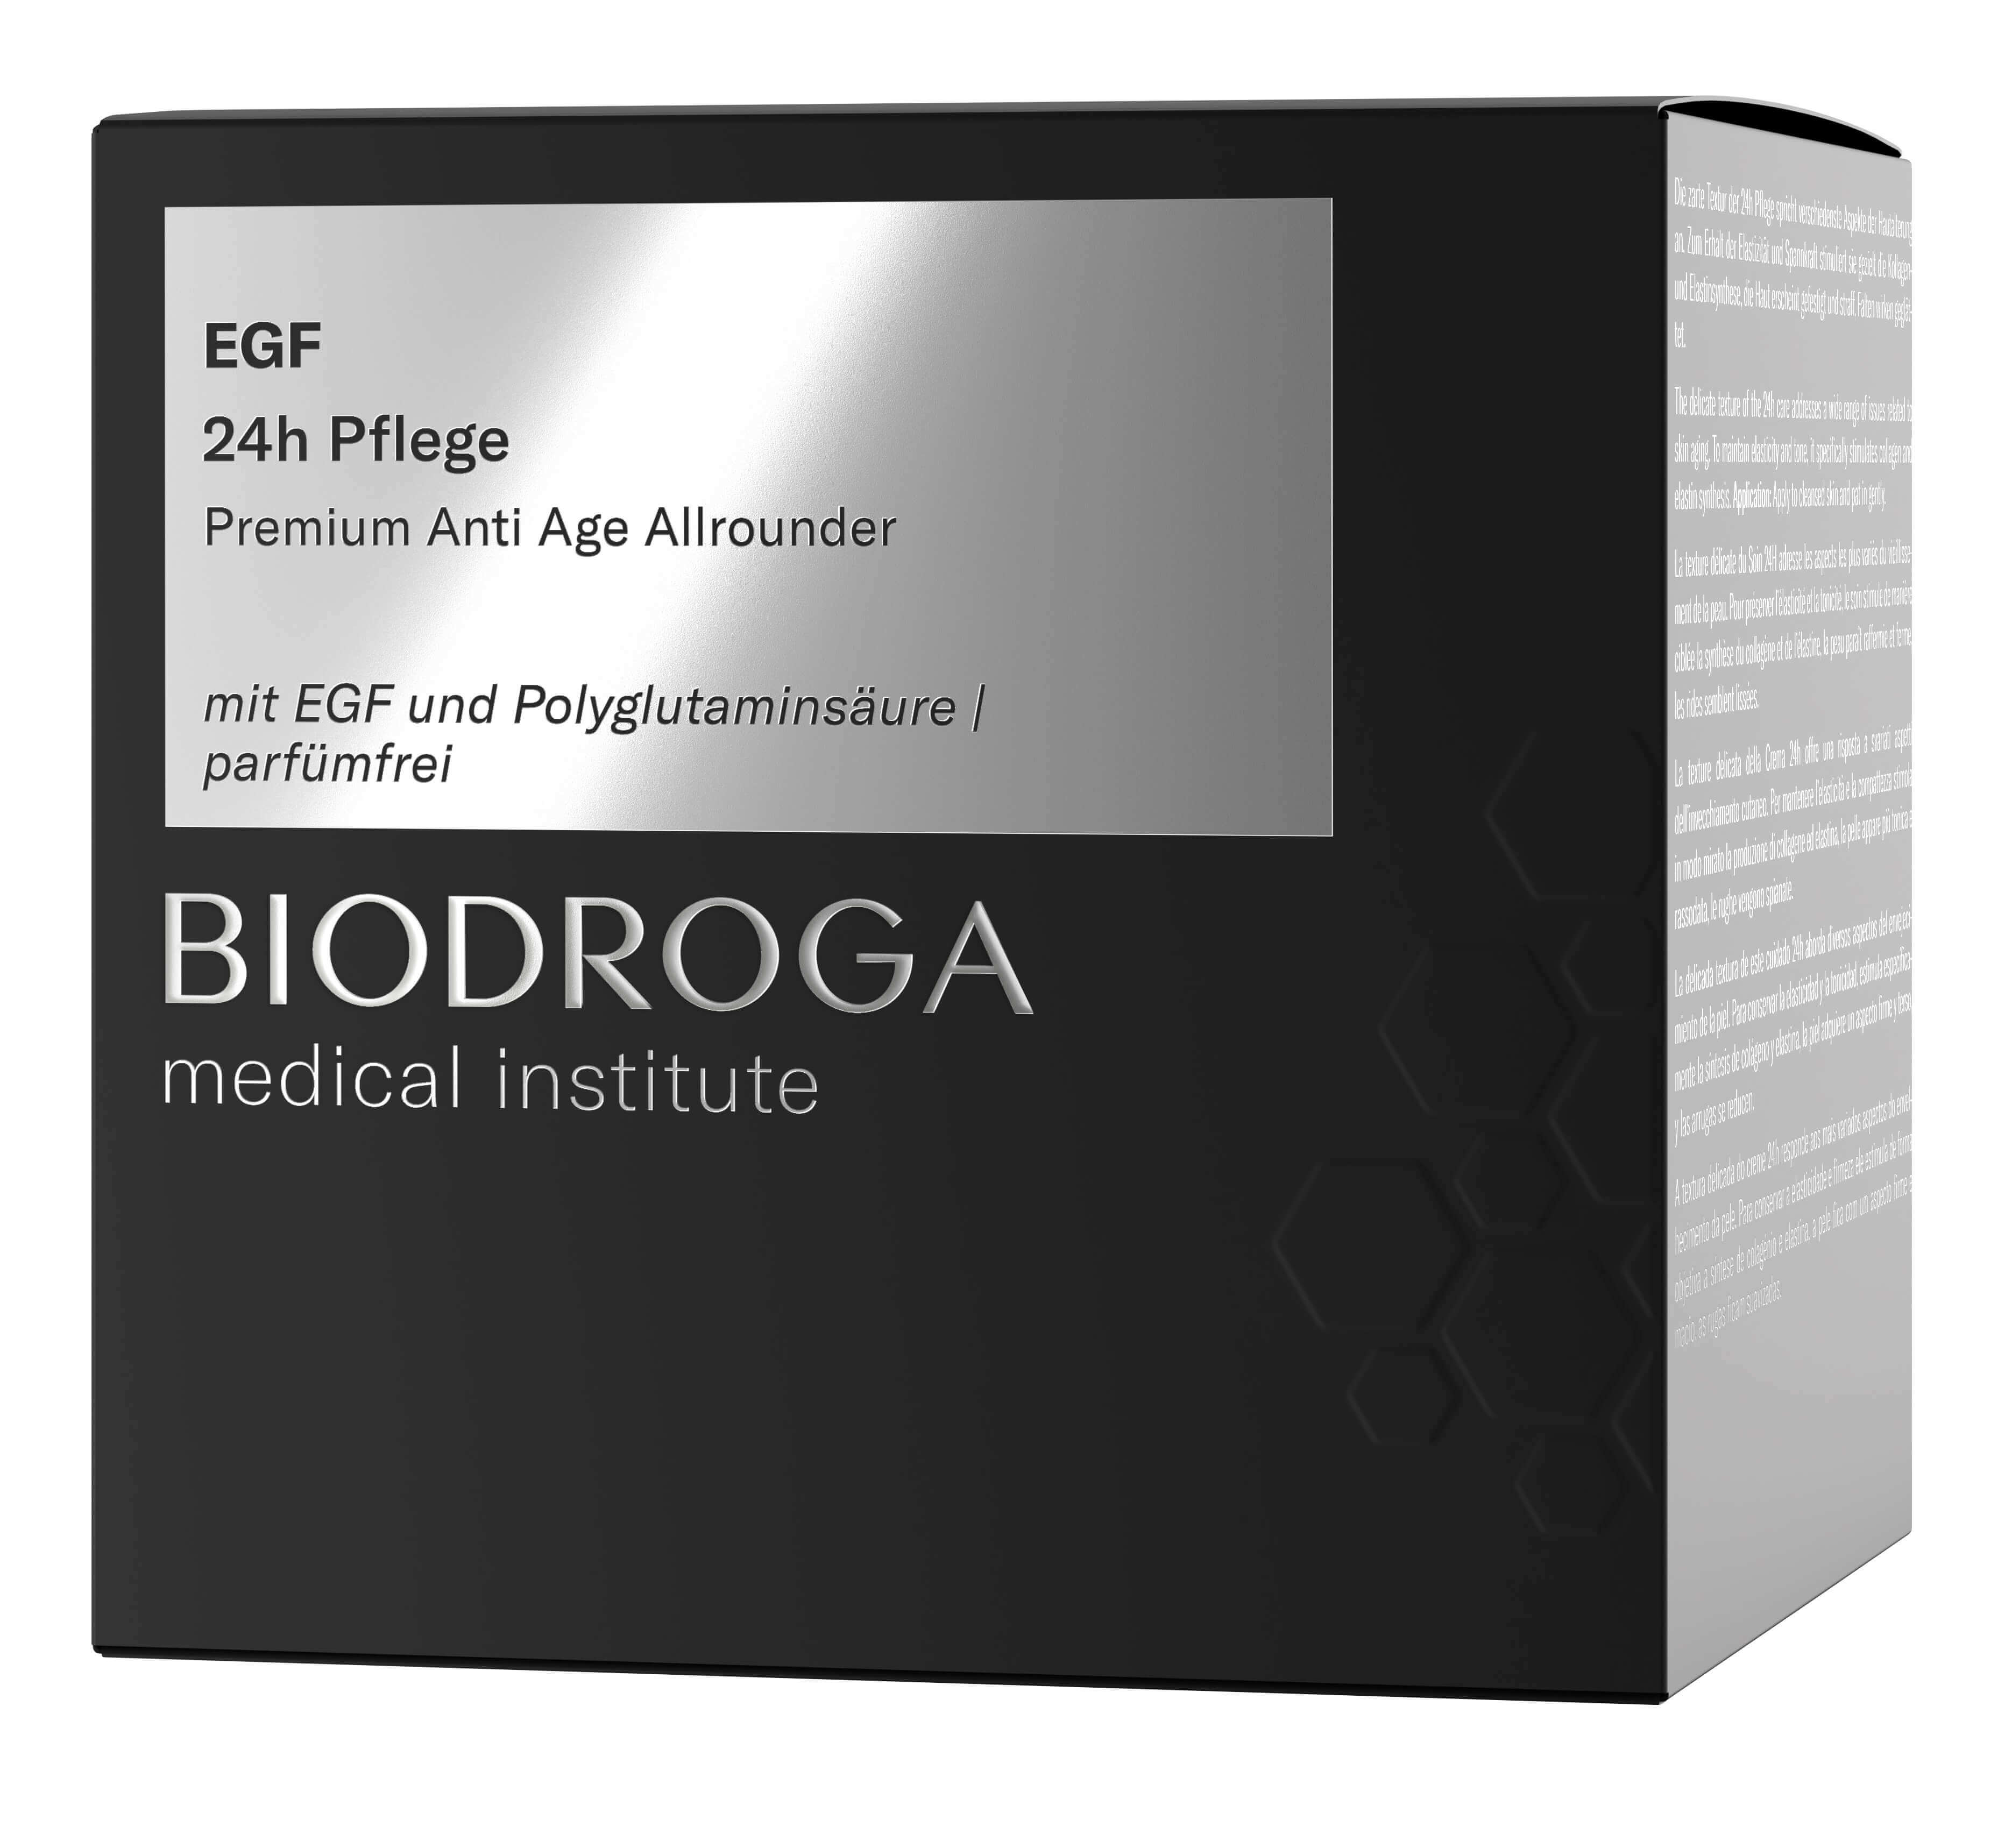 Biodroga Medical Institute EGF 24h Pflege 50 ml